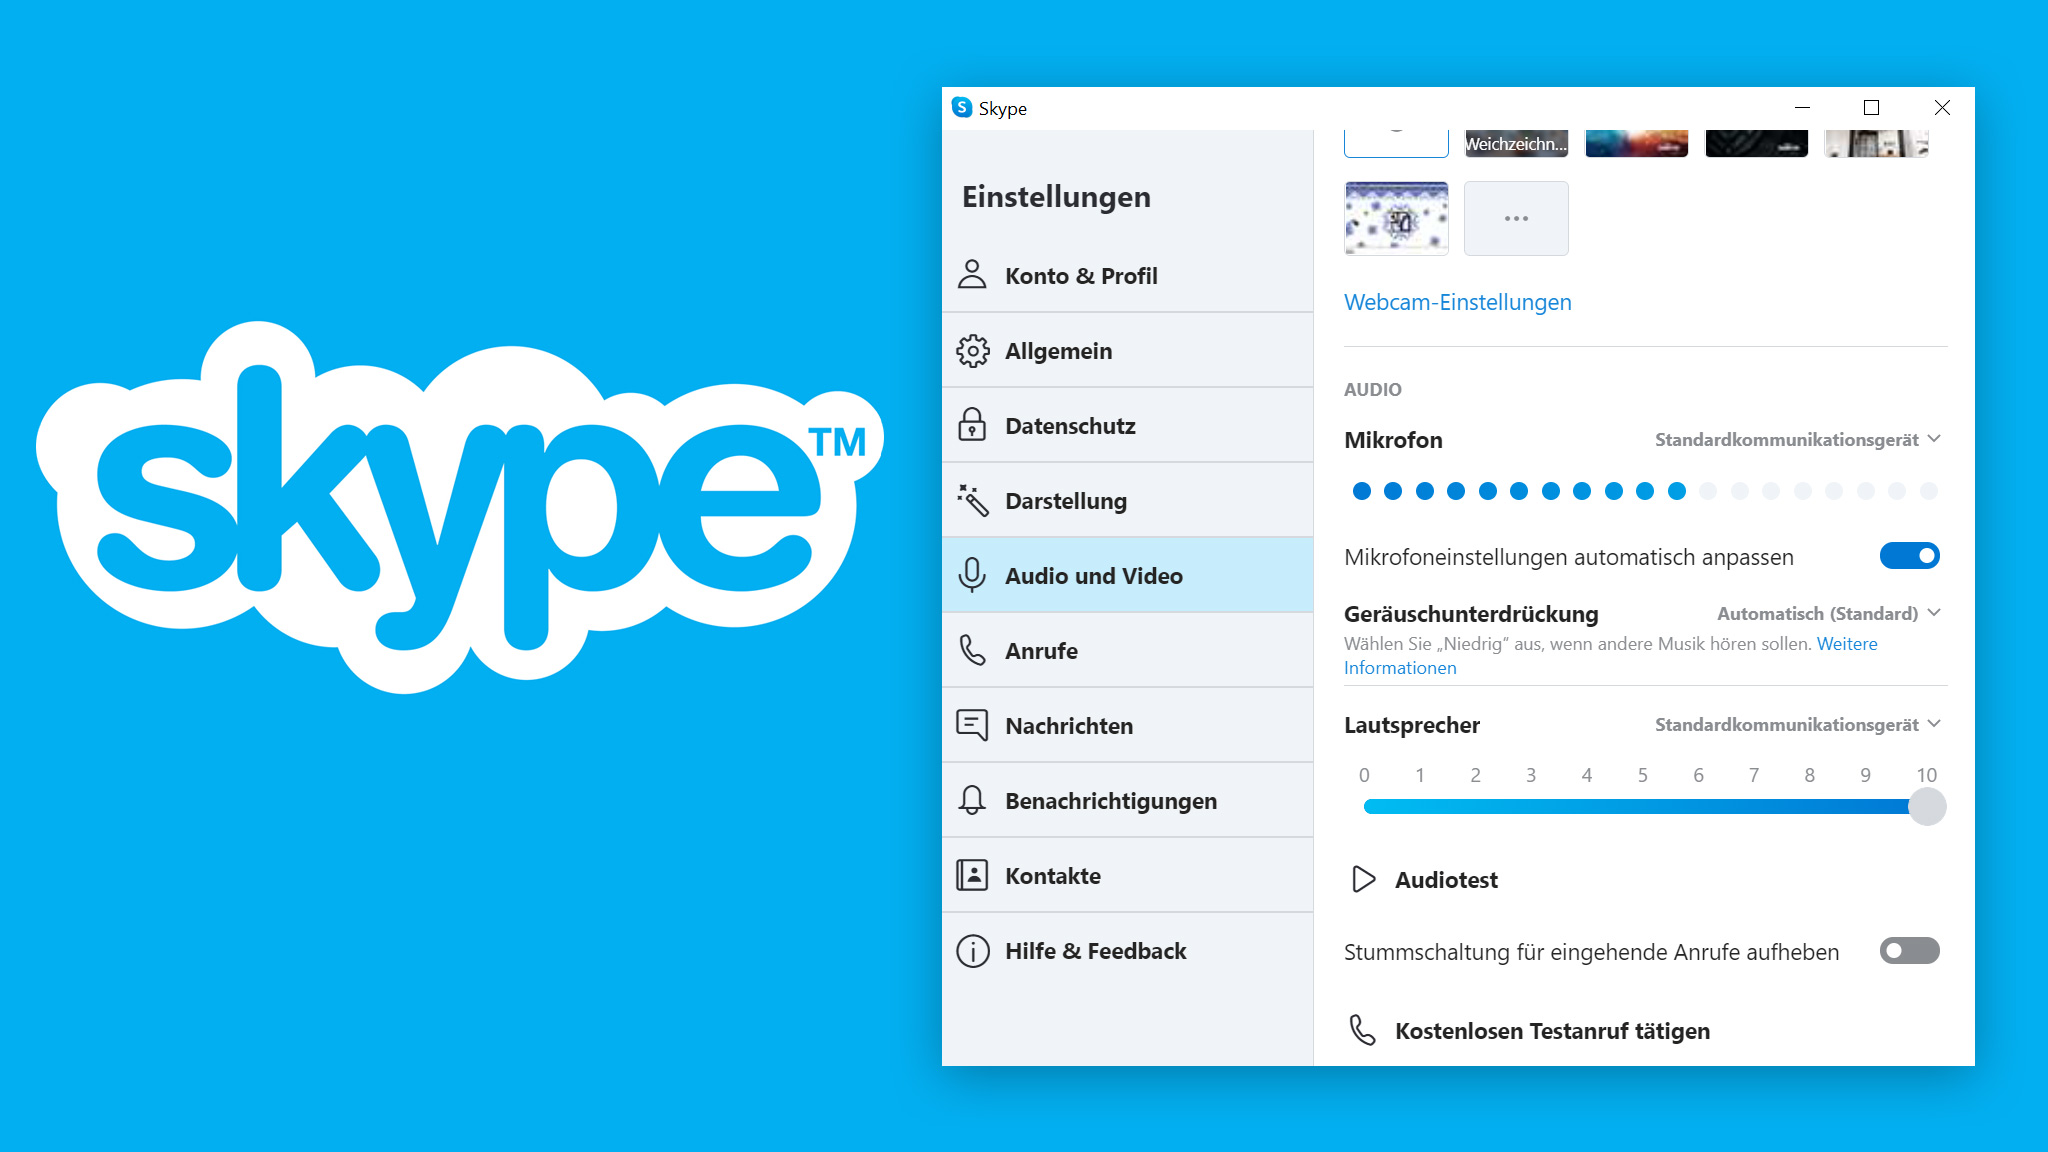 Mikrofon-Einstellungen in den Skype-Einstellungen überprüfen
Die Mikrofon-Konfiguration in Skype prüfen